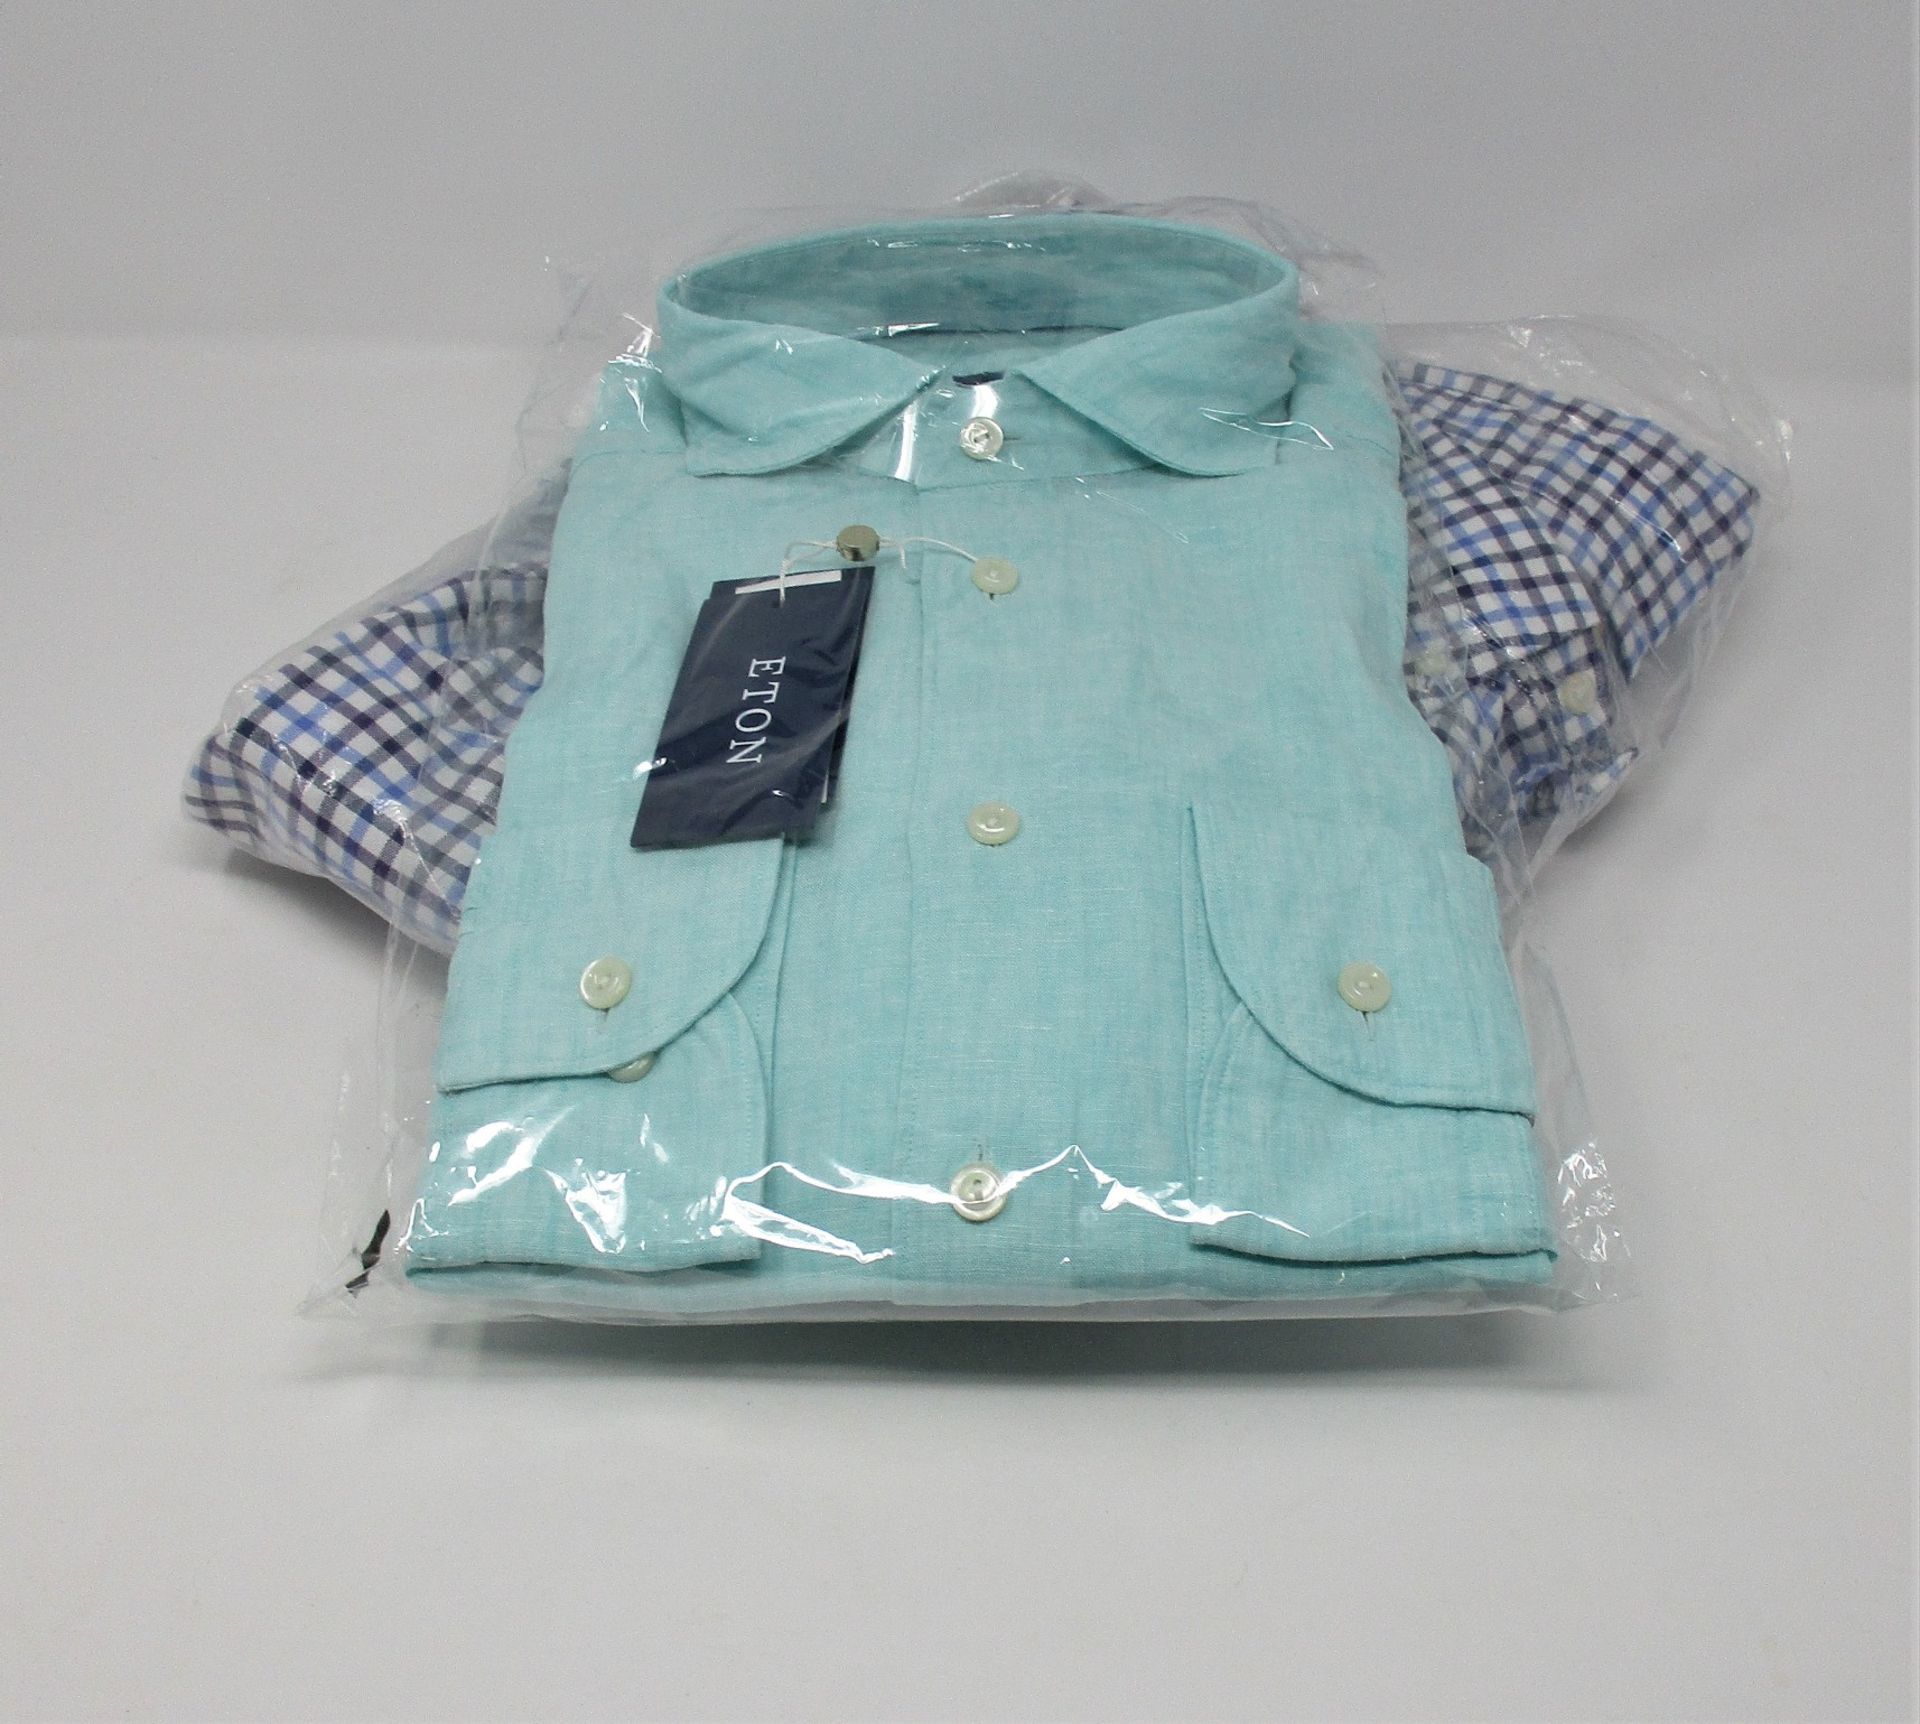 One as new Eton Green linen shirt - soft shirt size 39. One as new Ralph Lauren Mens Oxford Button